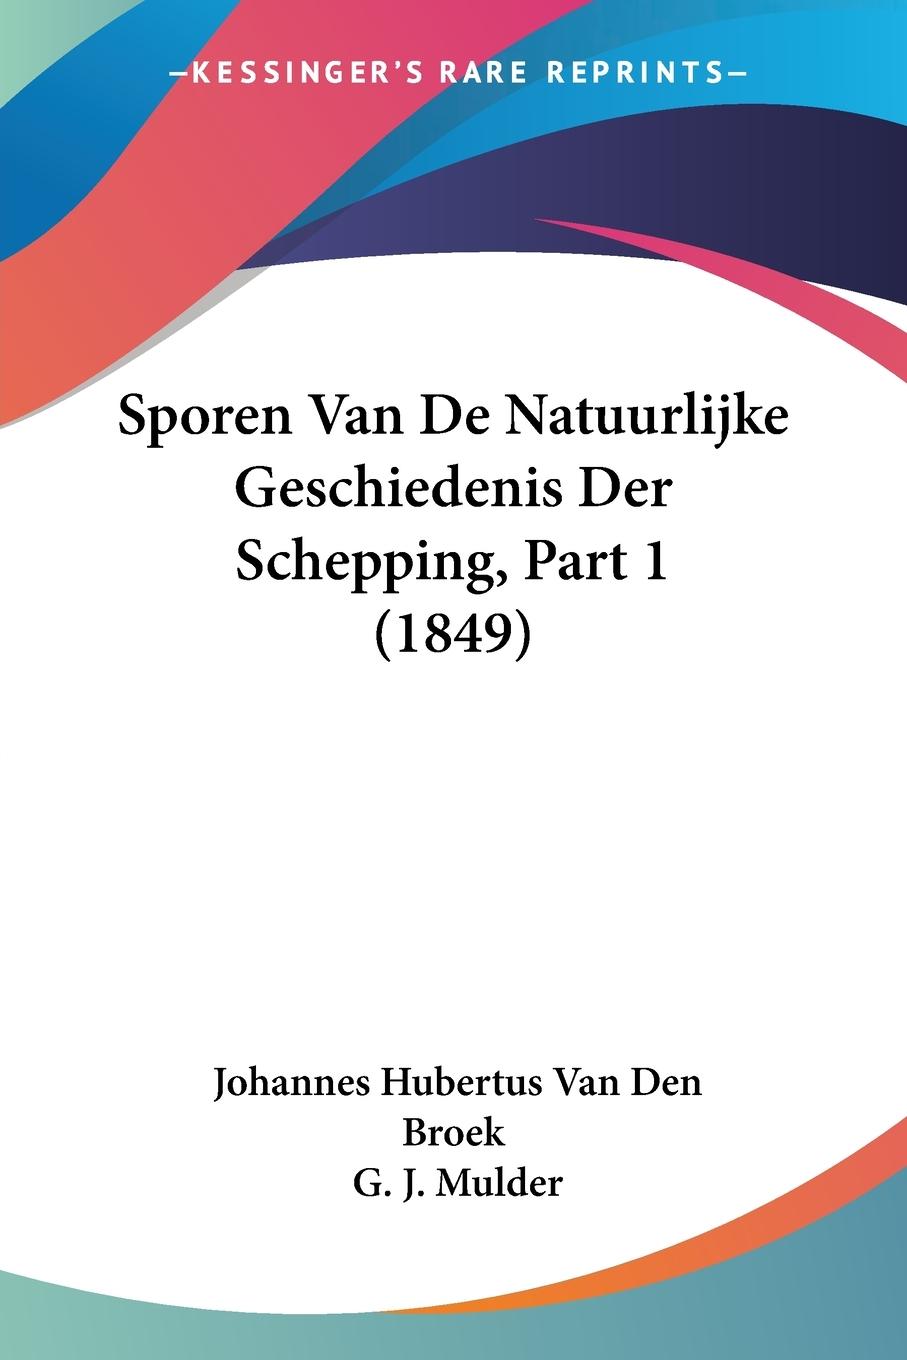 Sporen Van De Natuurlijke Geschiedenis Der Schepping, Part 1 (1849) - Broek, Johannes Hubertus van den